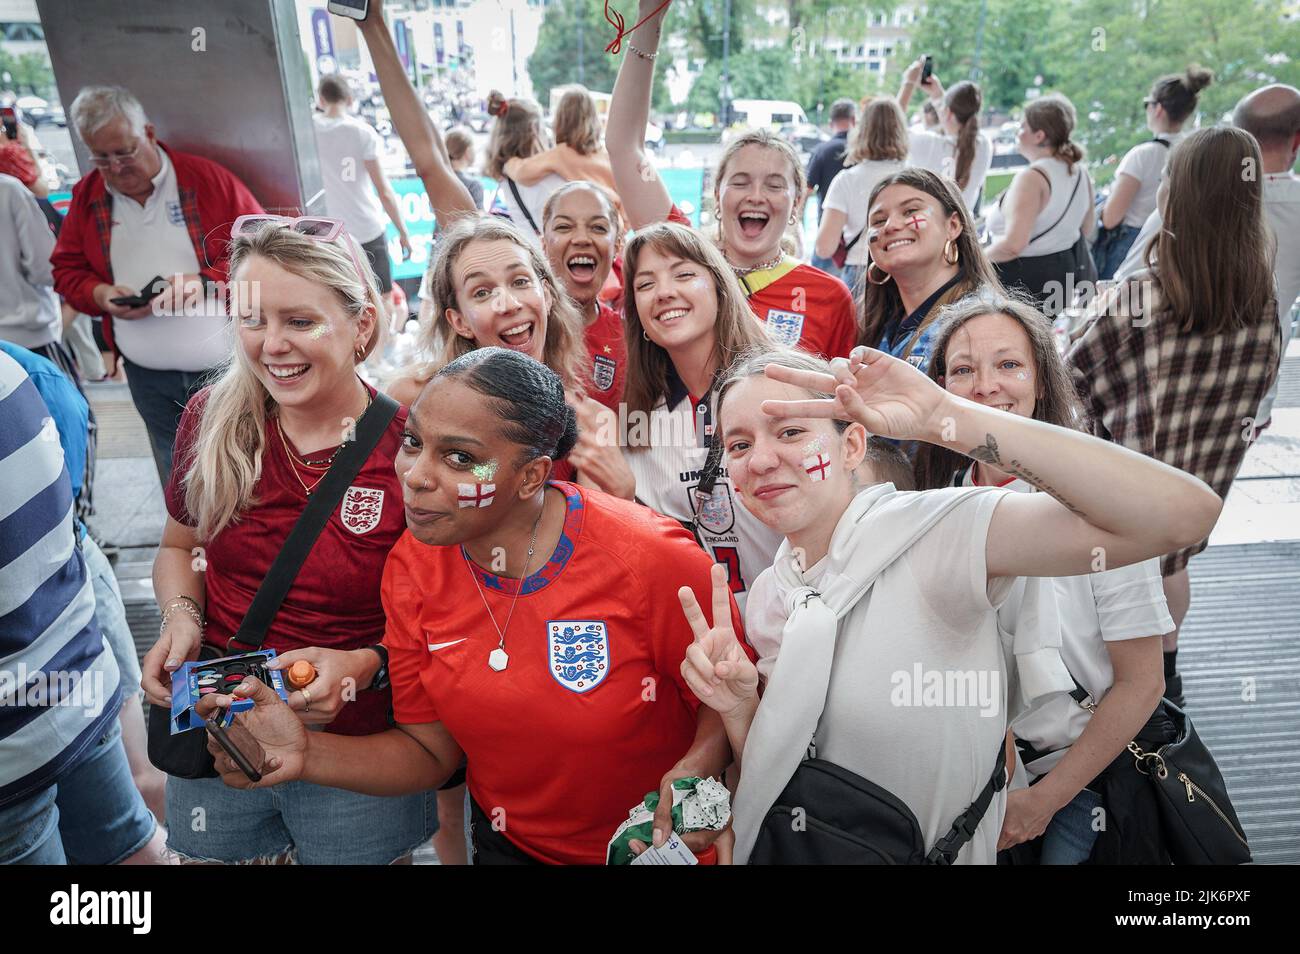 Londres, Royaume-Uni. 31st juillet 2022. Euro 2022: Les fans arrivent à la gare de Wembley Park en route vers le stade avant la finale du match euro Angleterre contre Allemagne de l'UEFA Womens. Credit: Guy Corbishley/Alamy Live News Banque D'Images